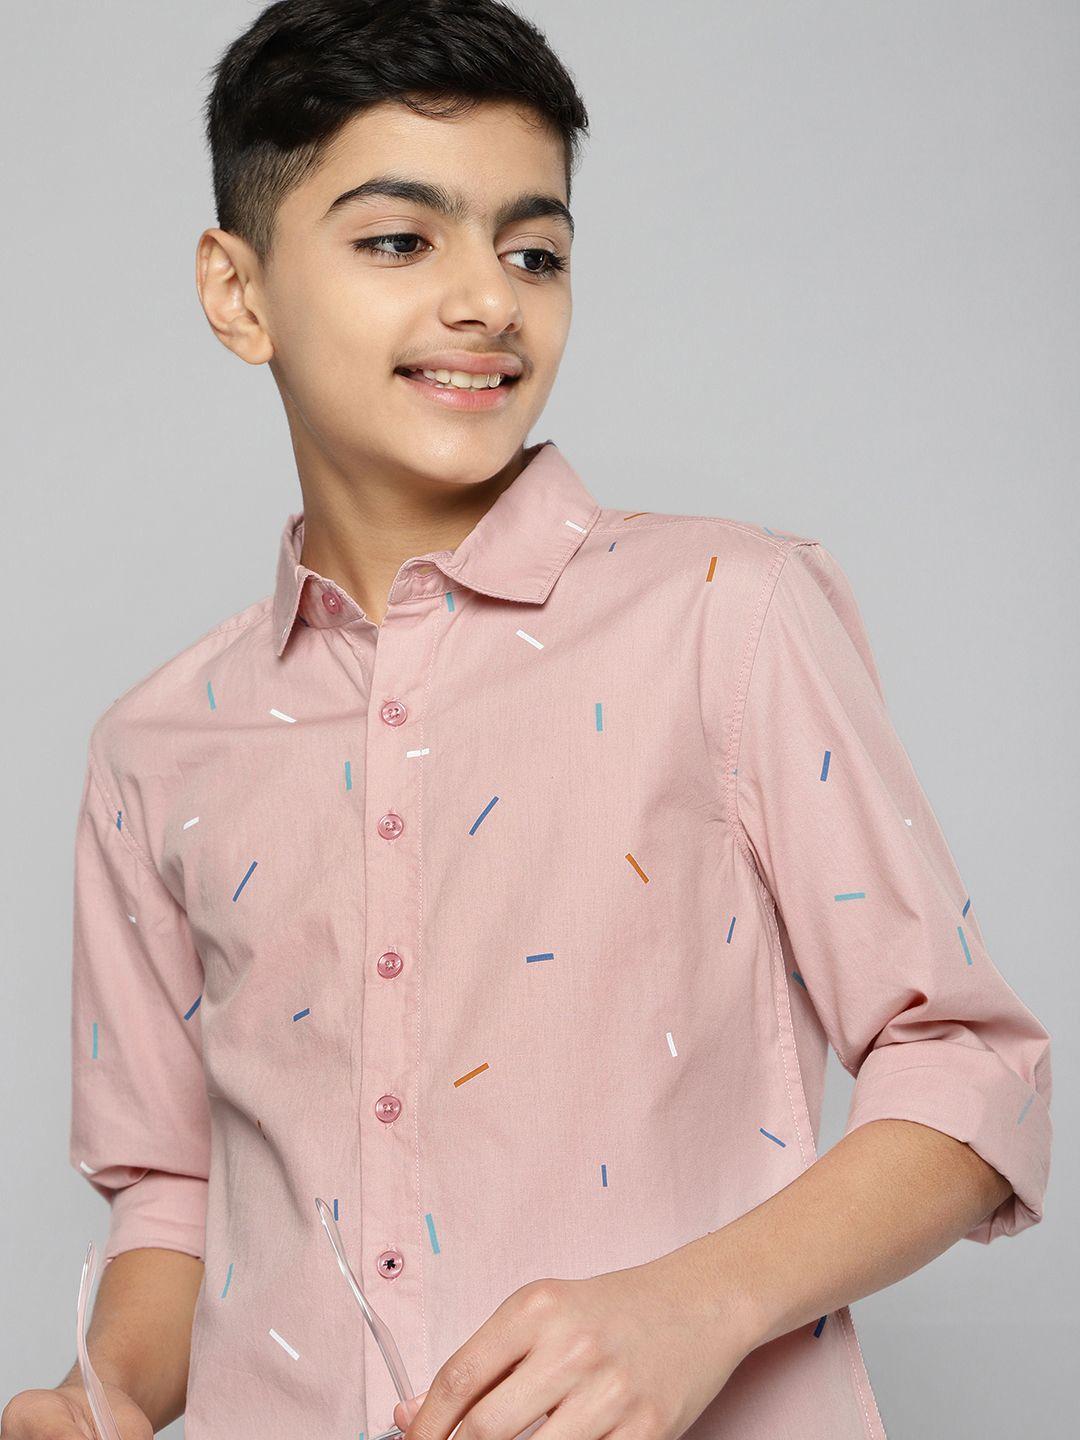 m&h juniors boys peach-coloured printed pure cotton casual shirt